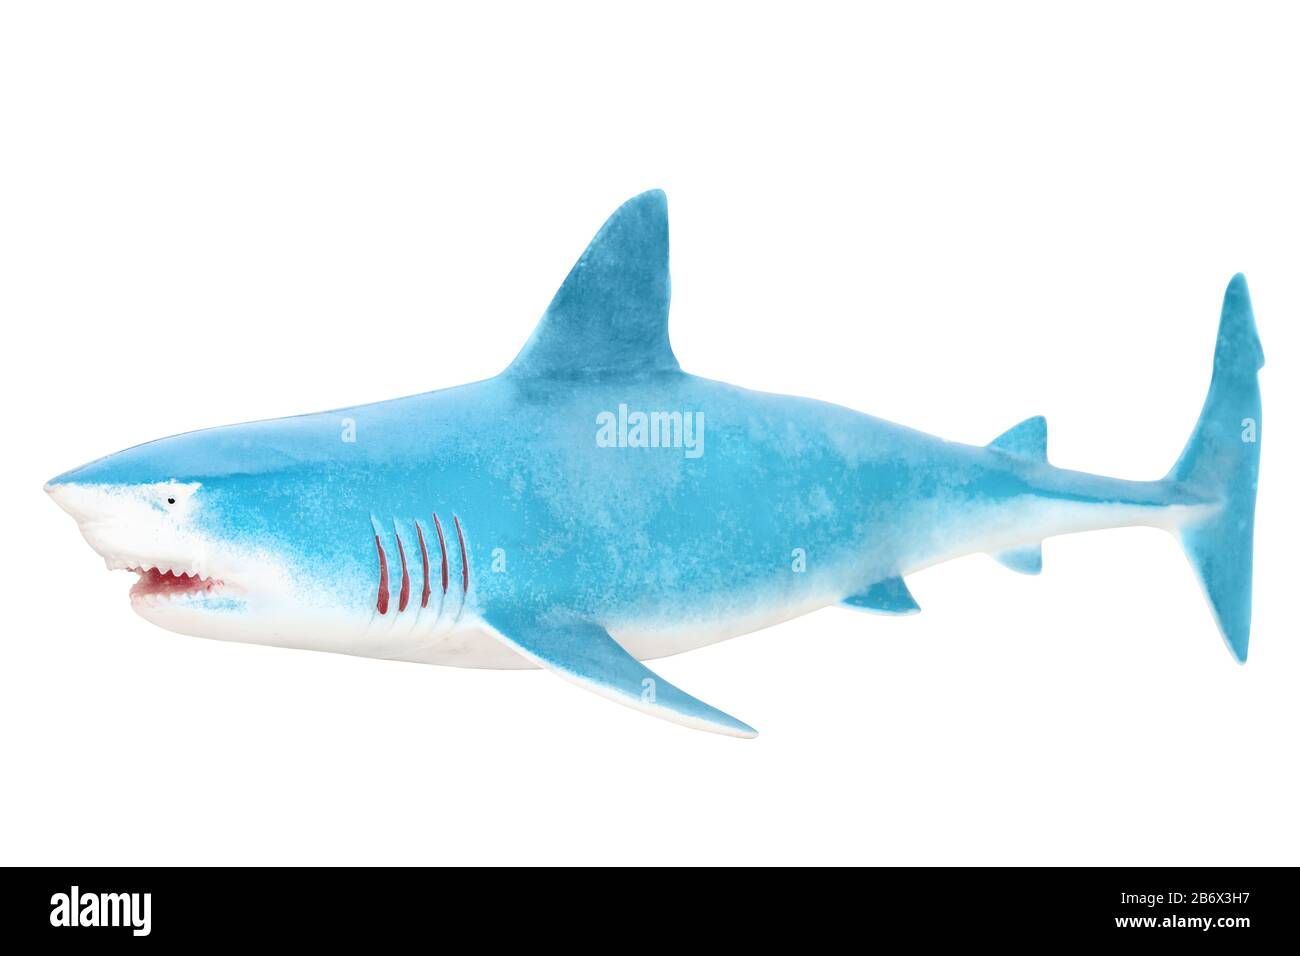 Hai-Spielzeug. Isoliert auf weißem Hintergrund ohne Schatten. Hai auf weißem bg. Segelfischspielchen aus Kunststoff. Stockfoto